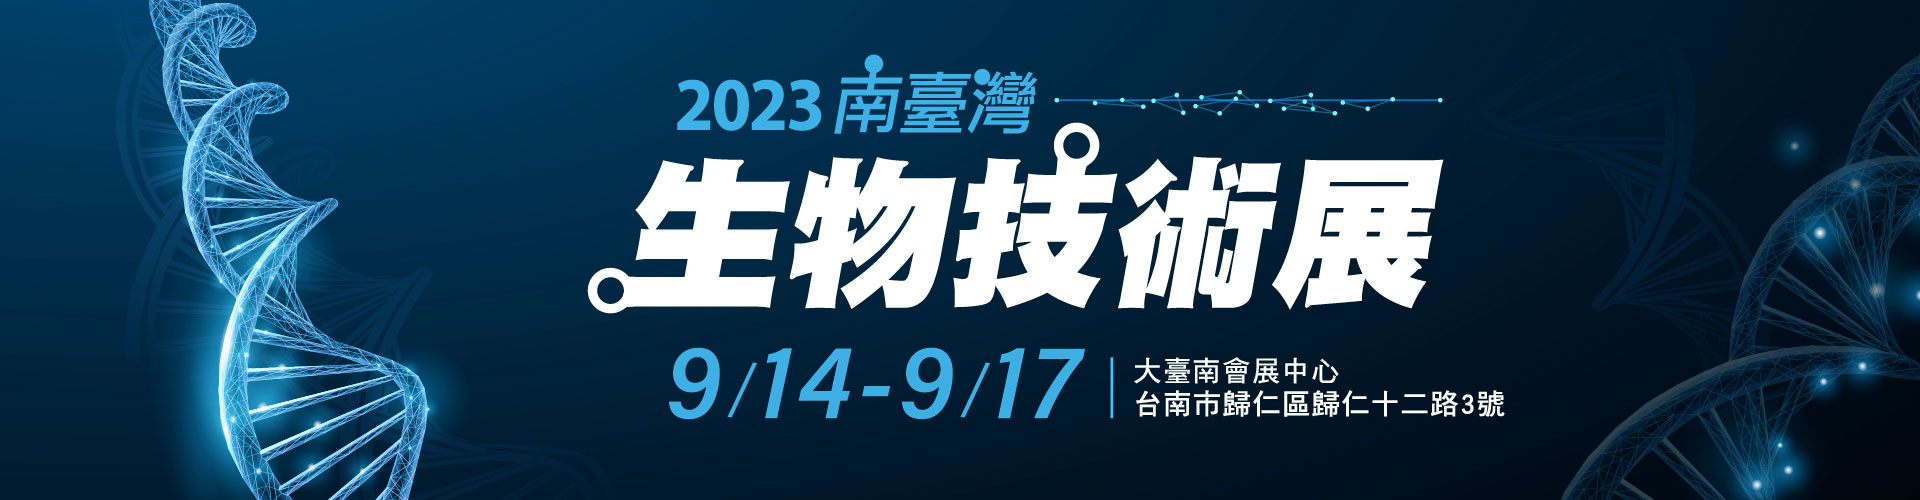 2023南臺灣生物技術展